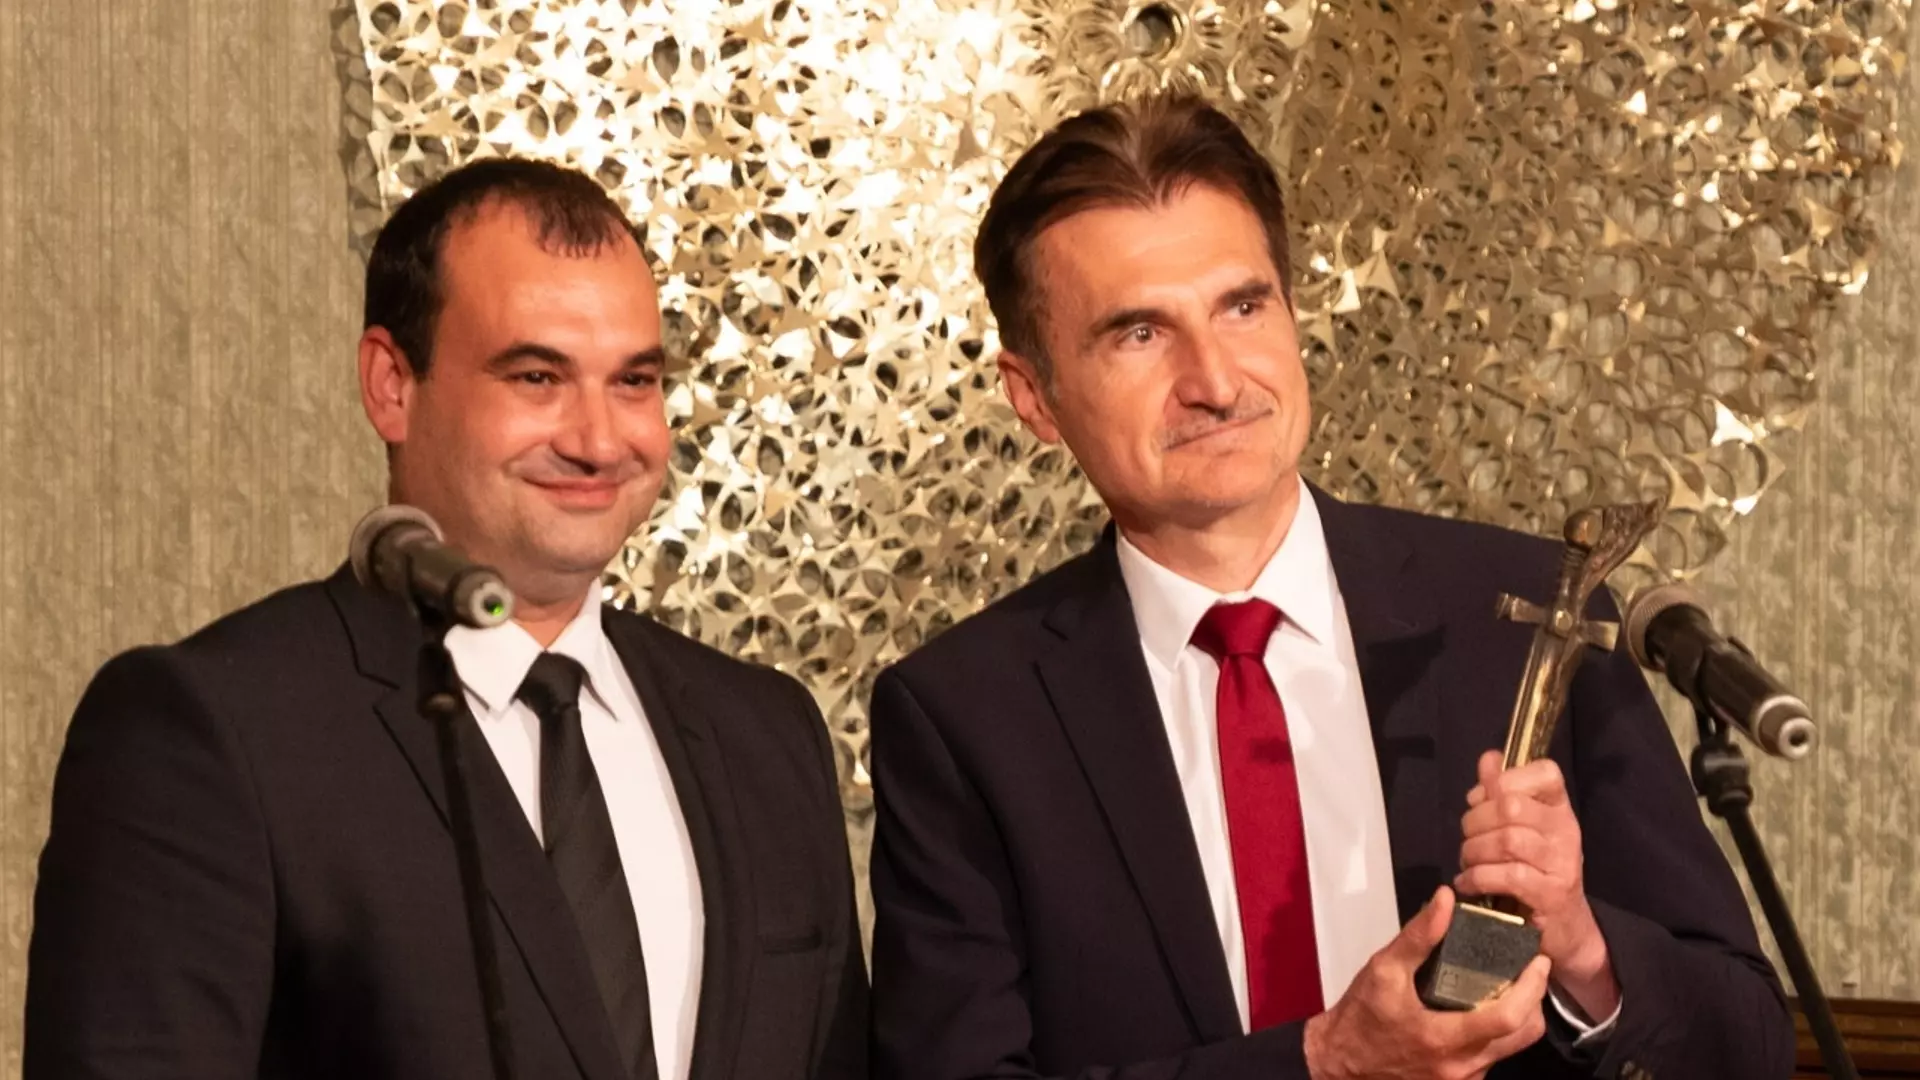 Пламен Тотев получи персоналната награда за култура "Ловешки меч"